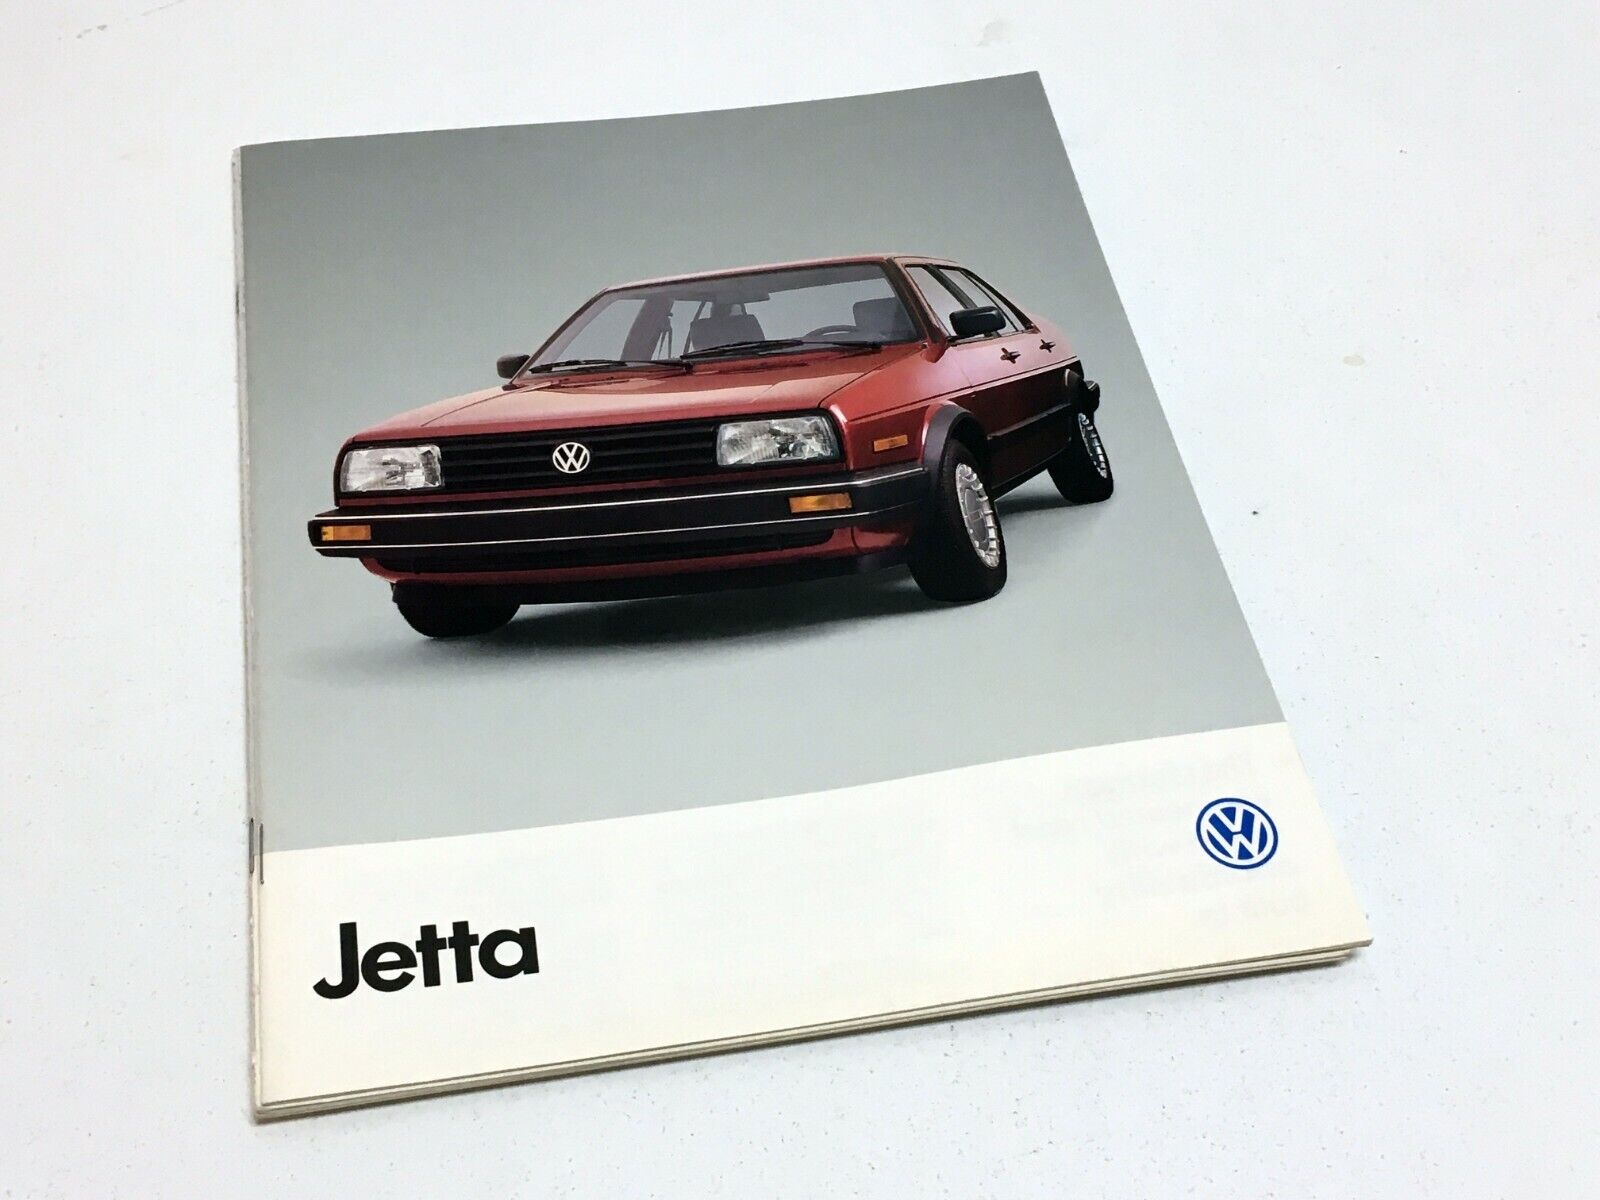 1989 Volkswagen Jetta Brochure